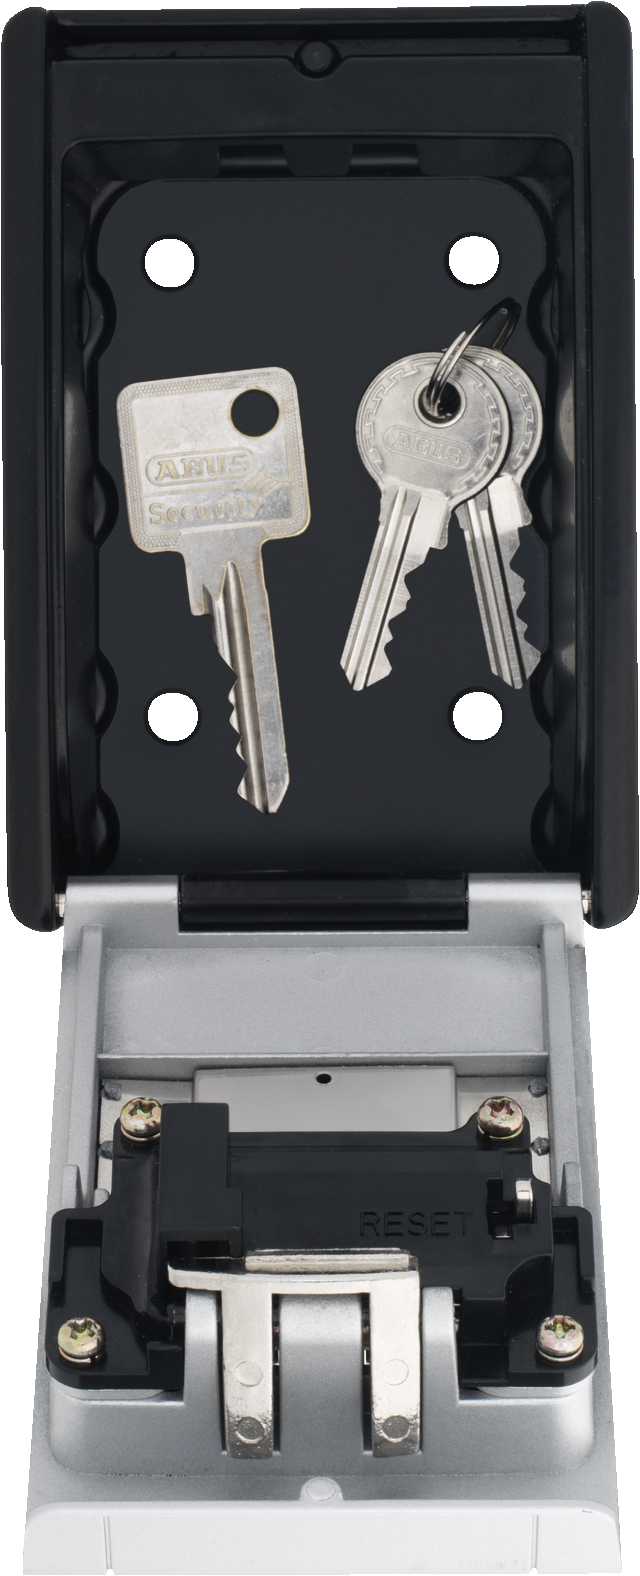 KeyGarage™ 787 med nycklar